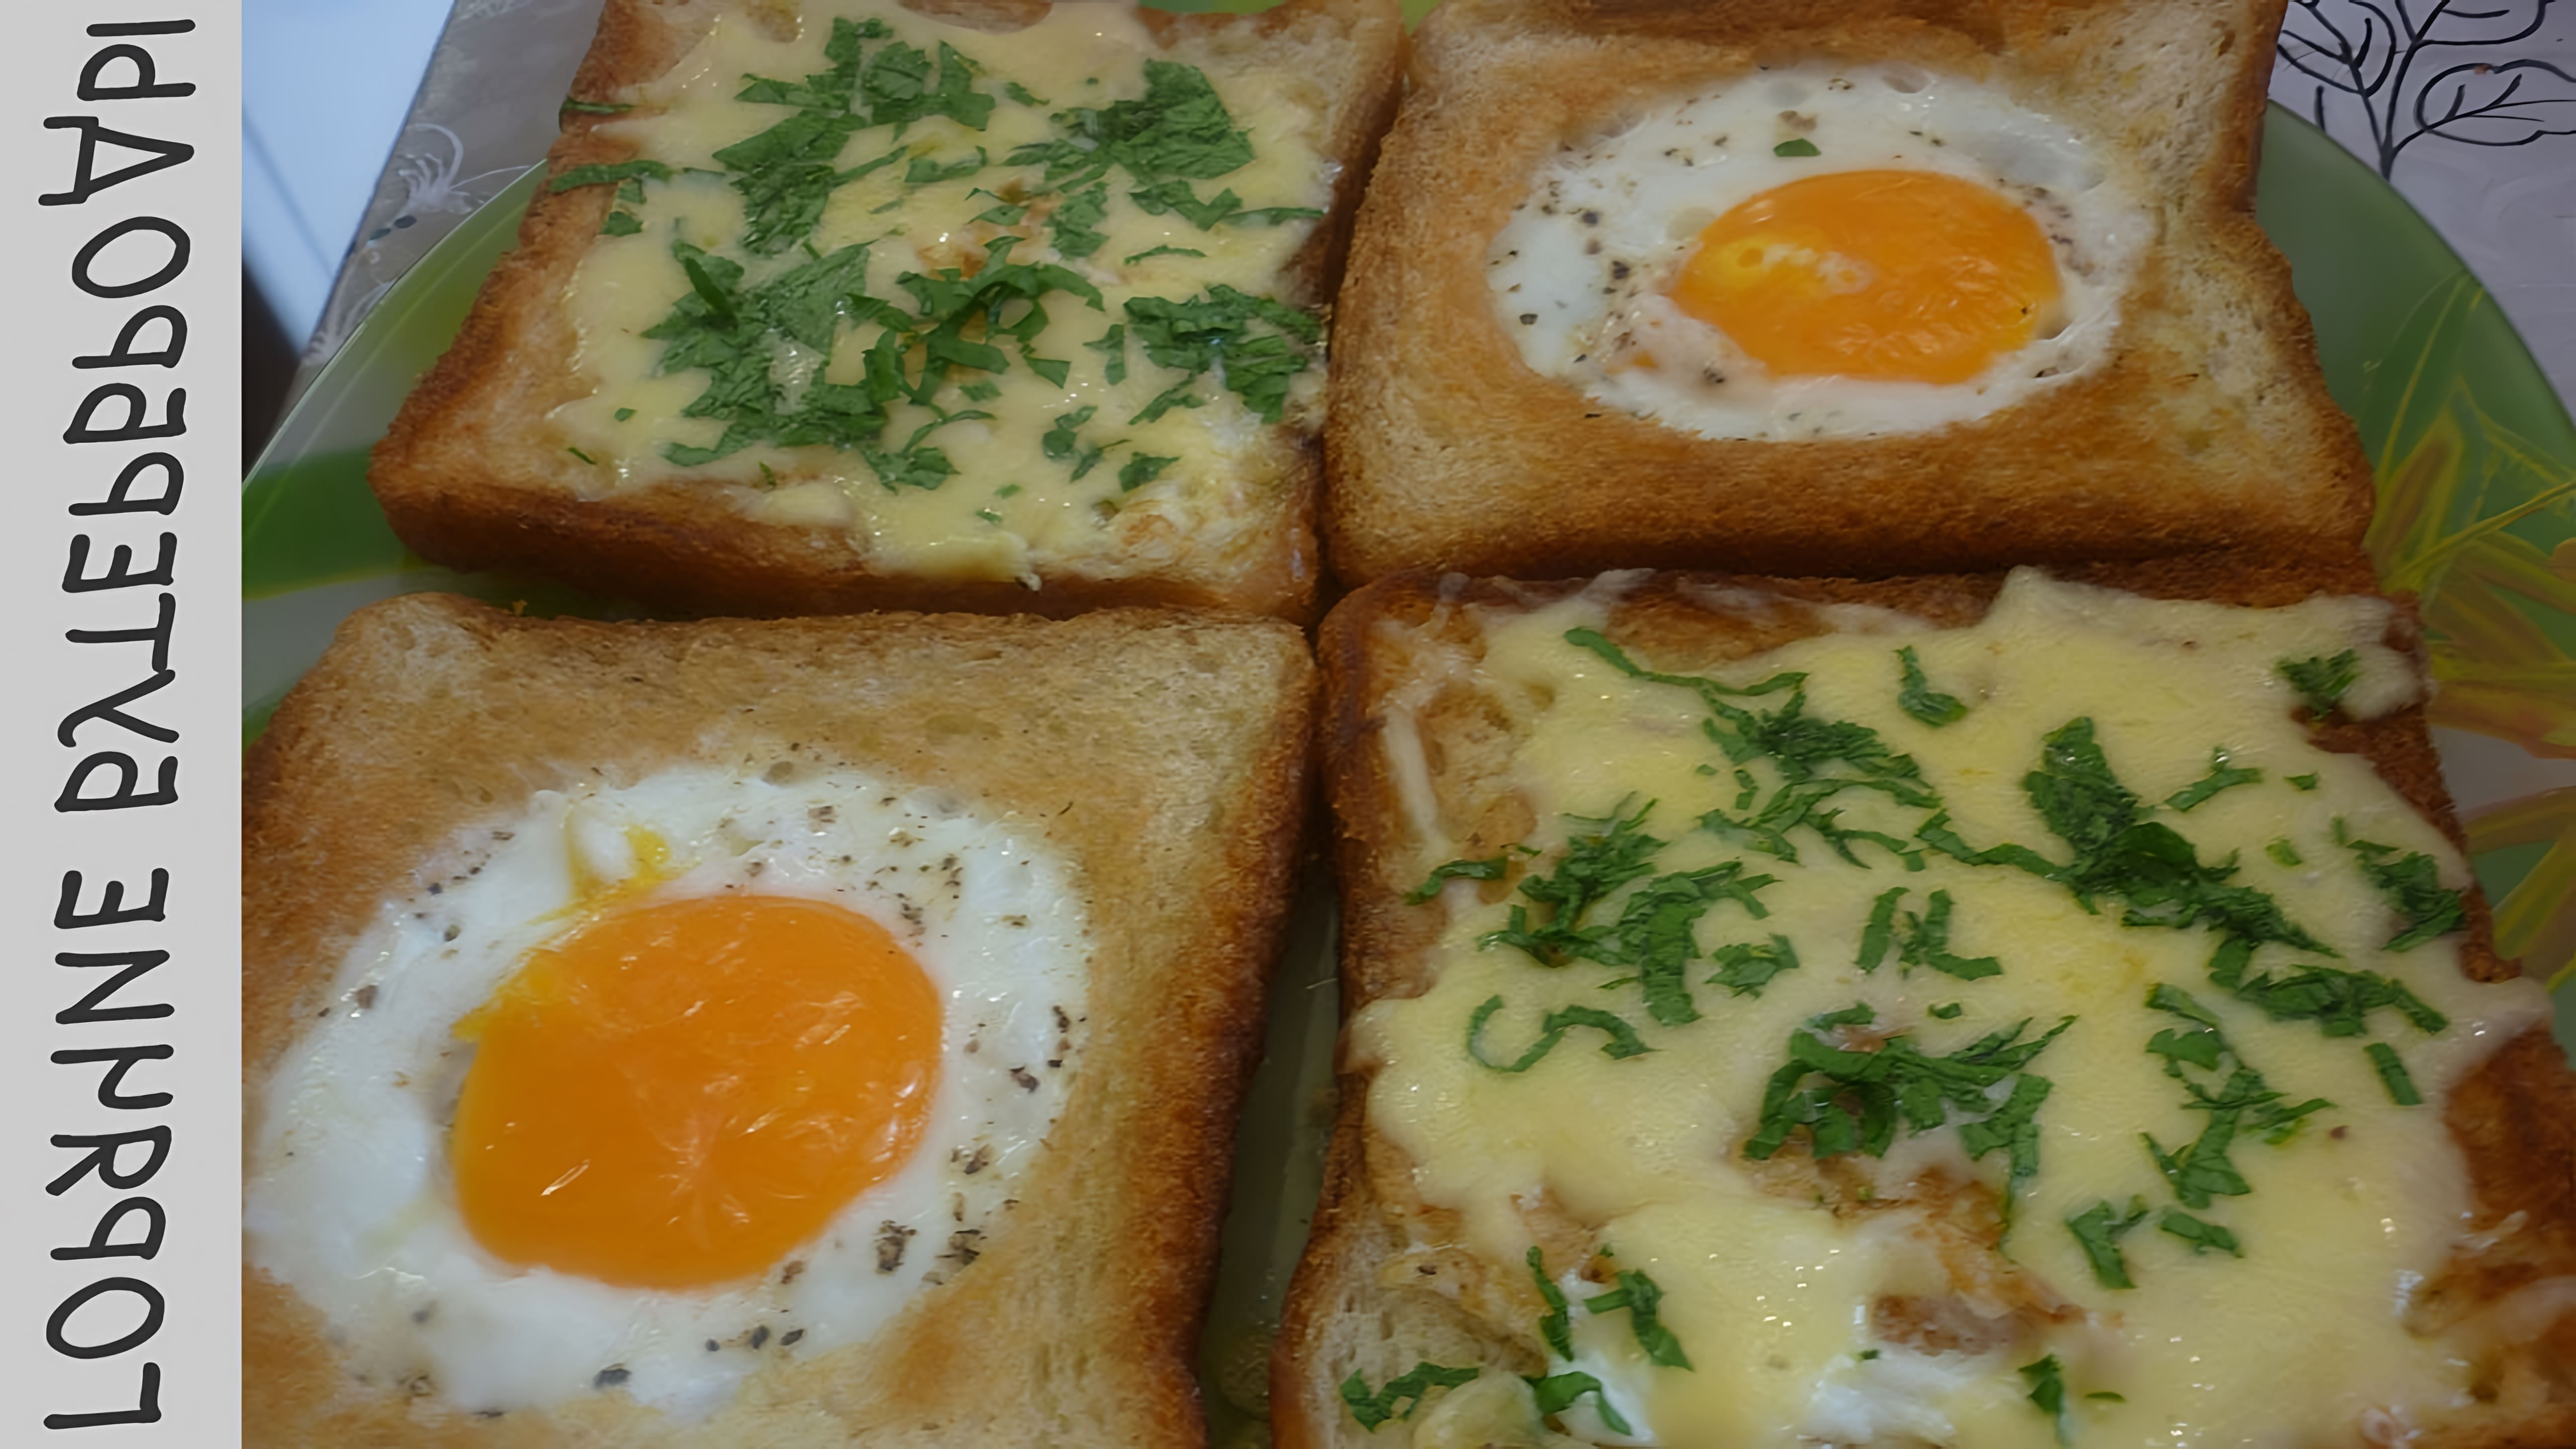 В этом видео демонстрируется процесс приготовления бутербродов с яйцом или яичницы в хлебе